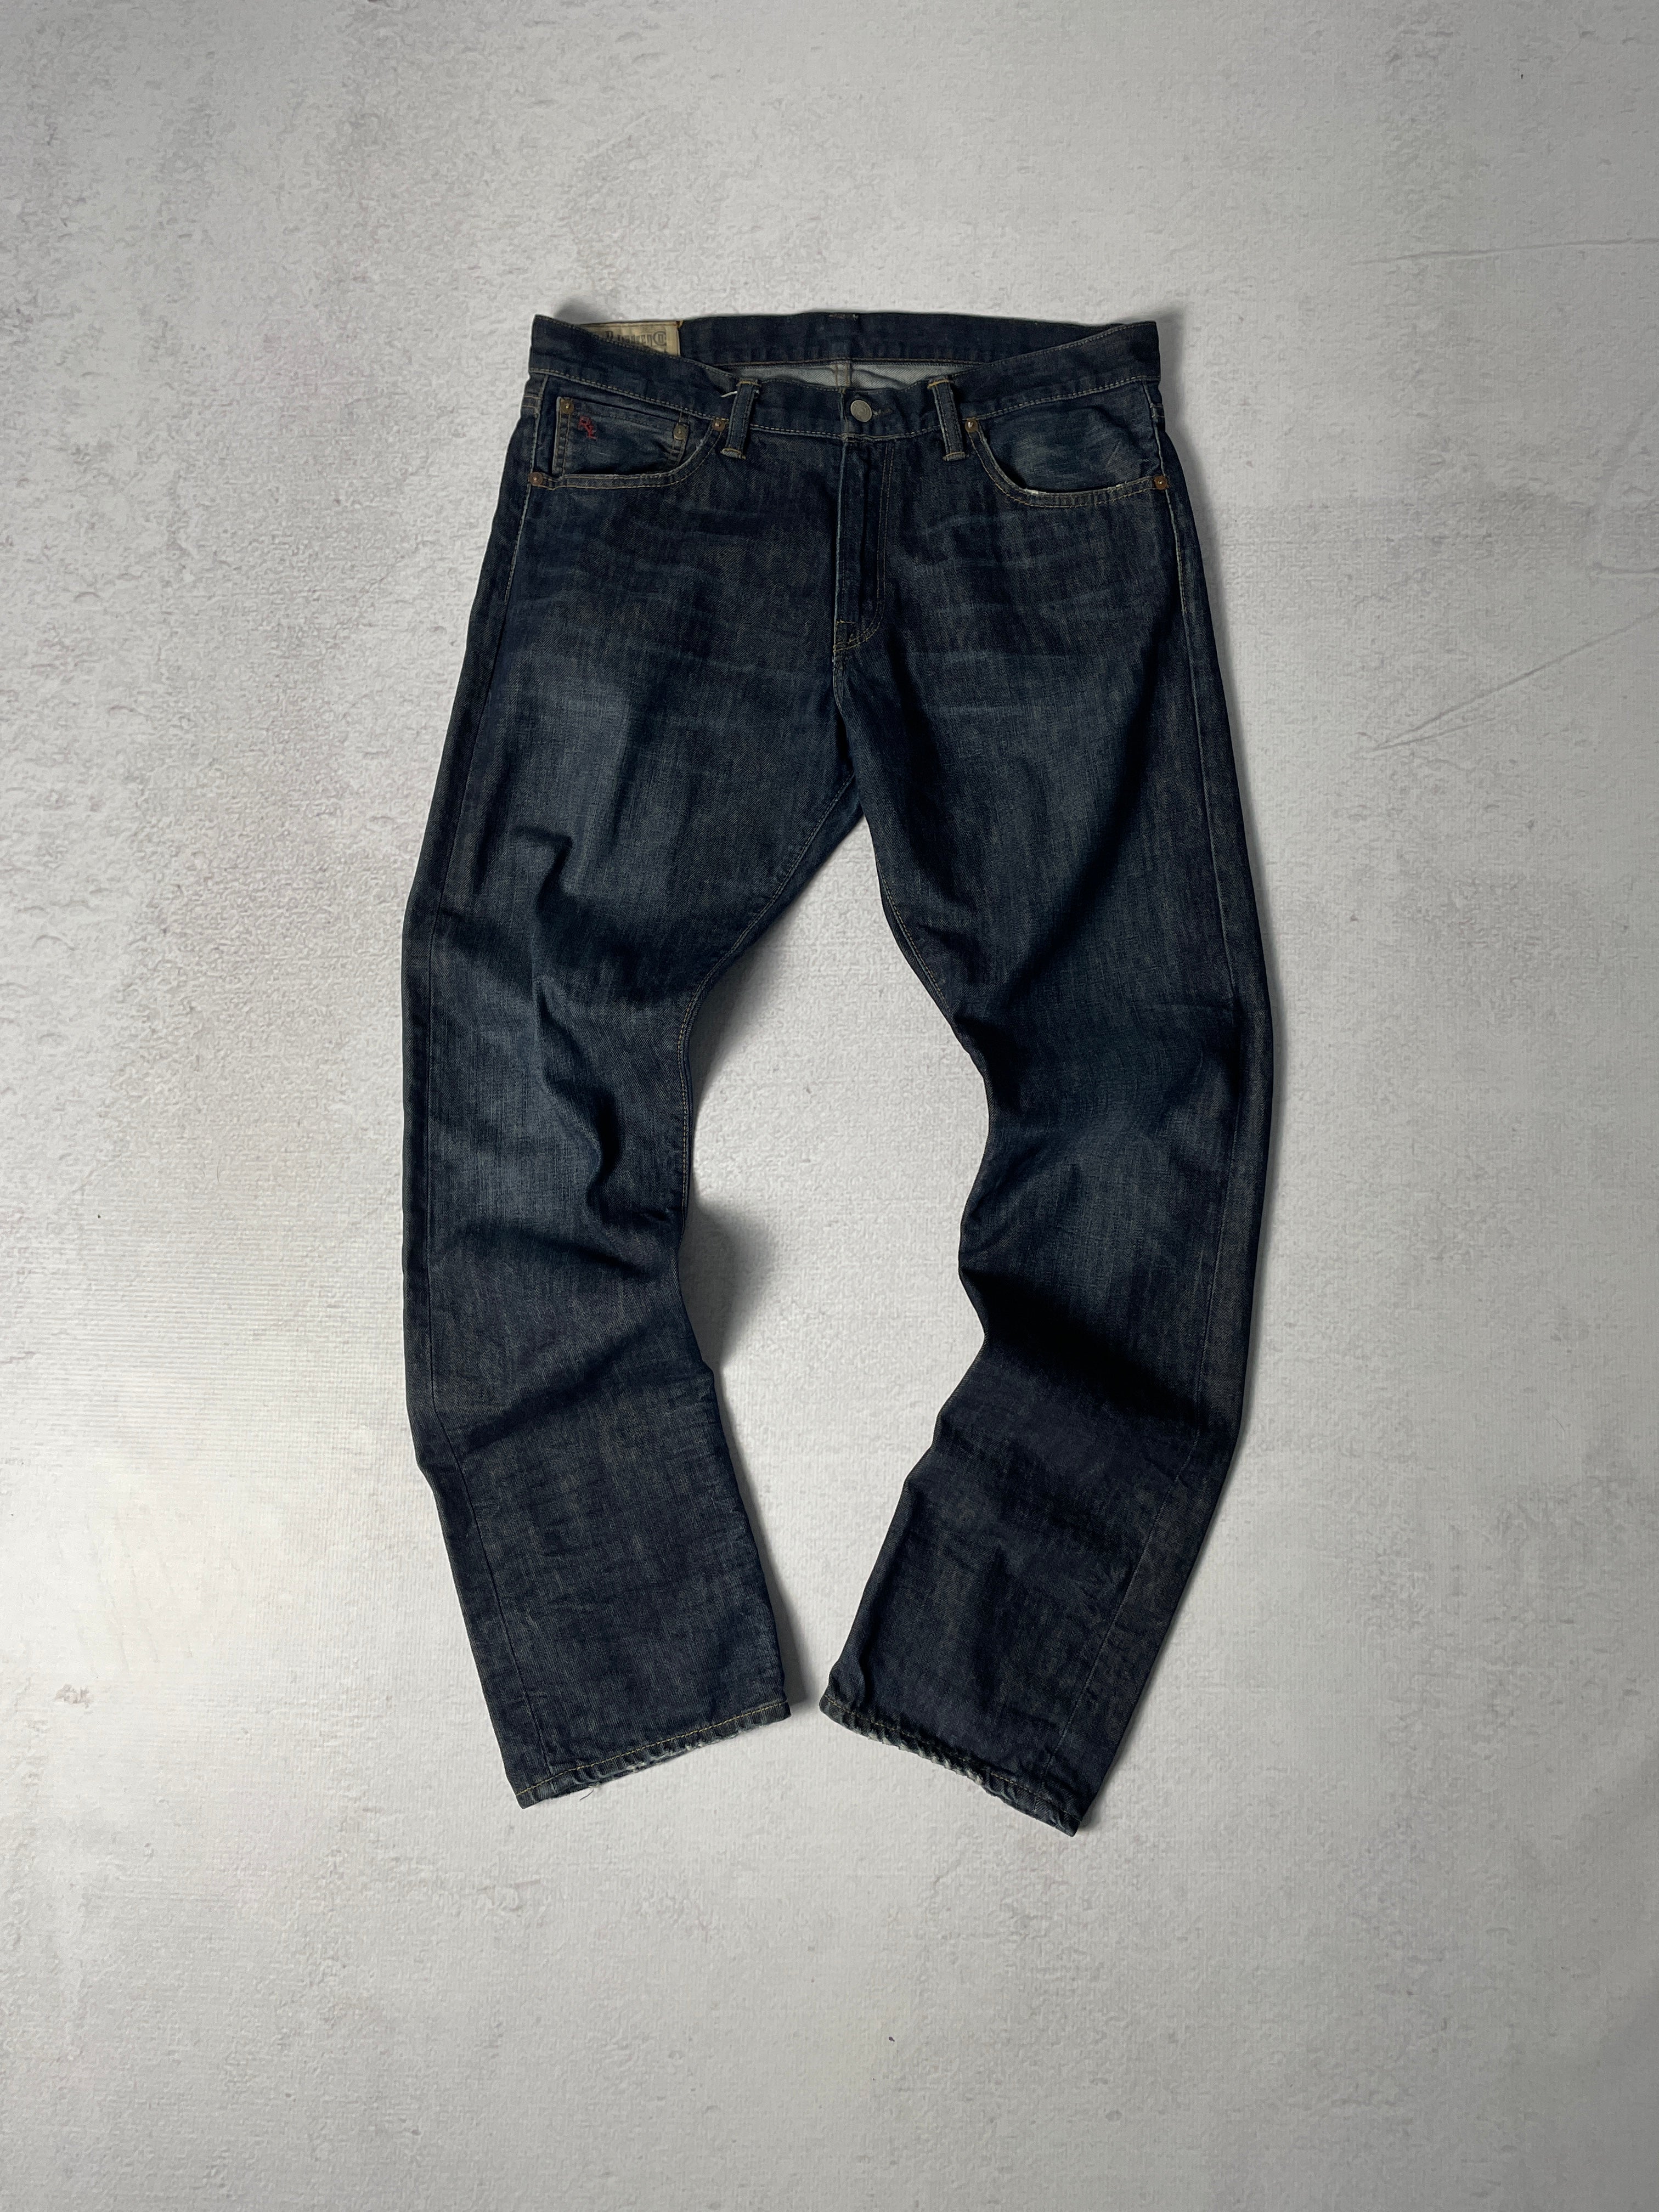 Vintage Polo Ralph Lauren Jeans - Men's 34 x 32